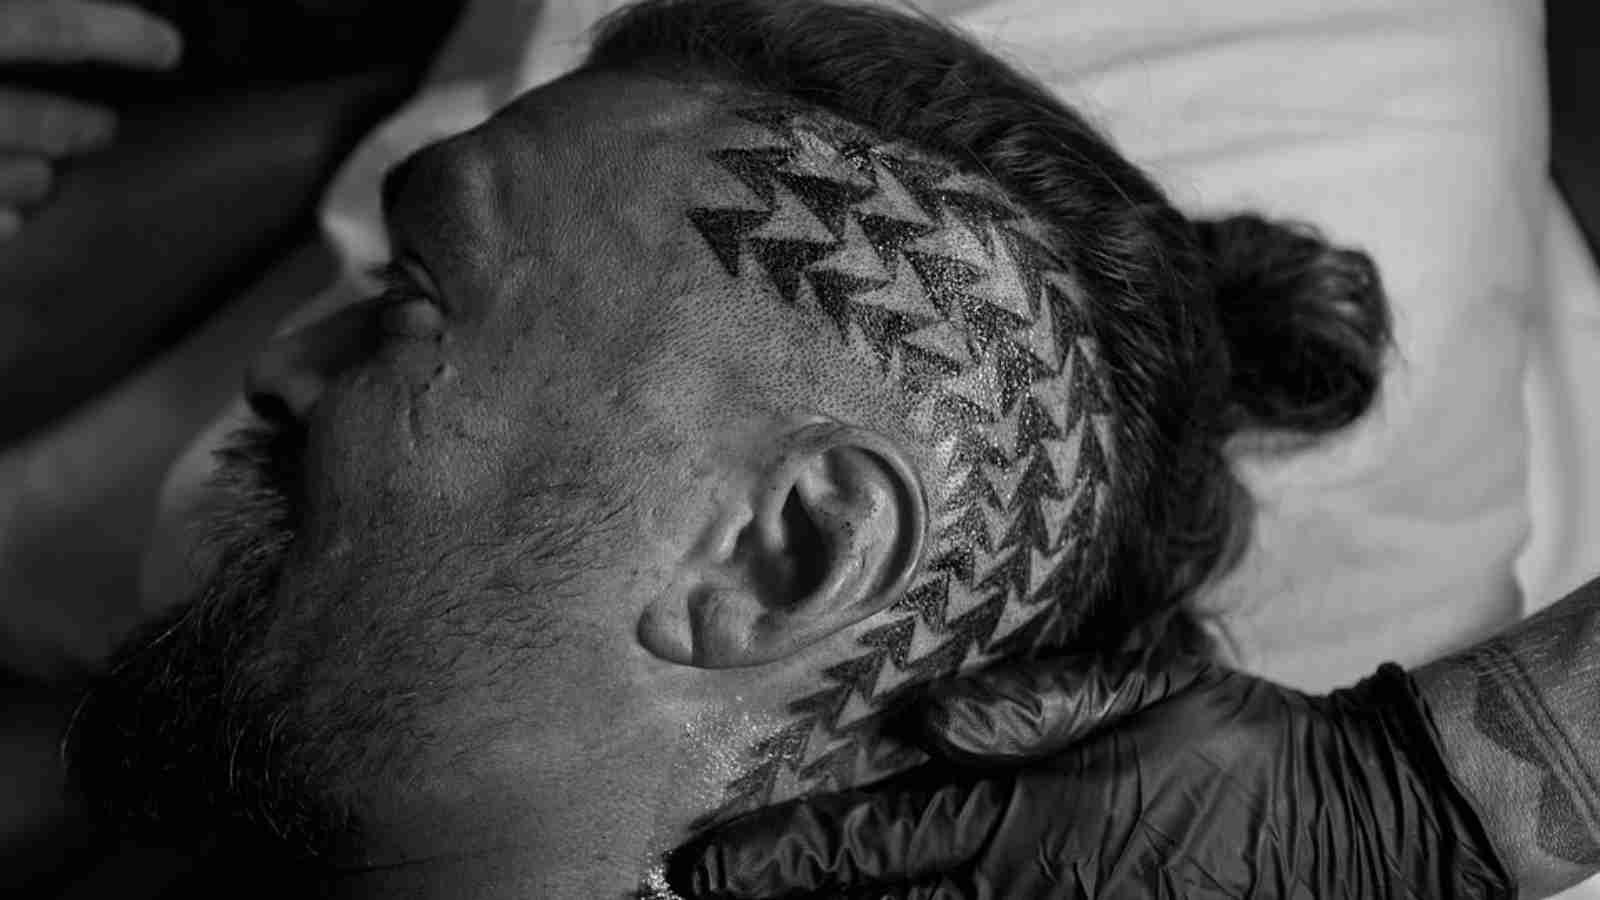 Jason Momoa shows off new head tattoo as he heads to Aotearoa